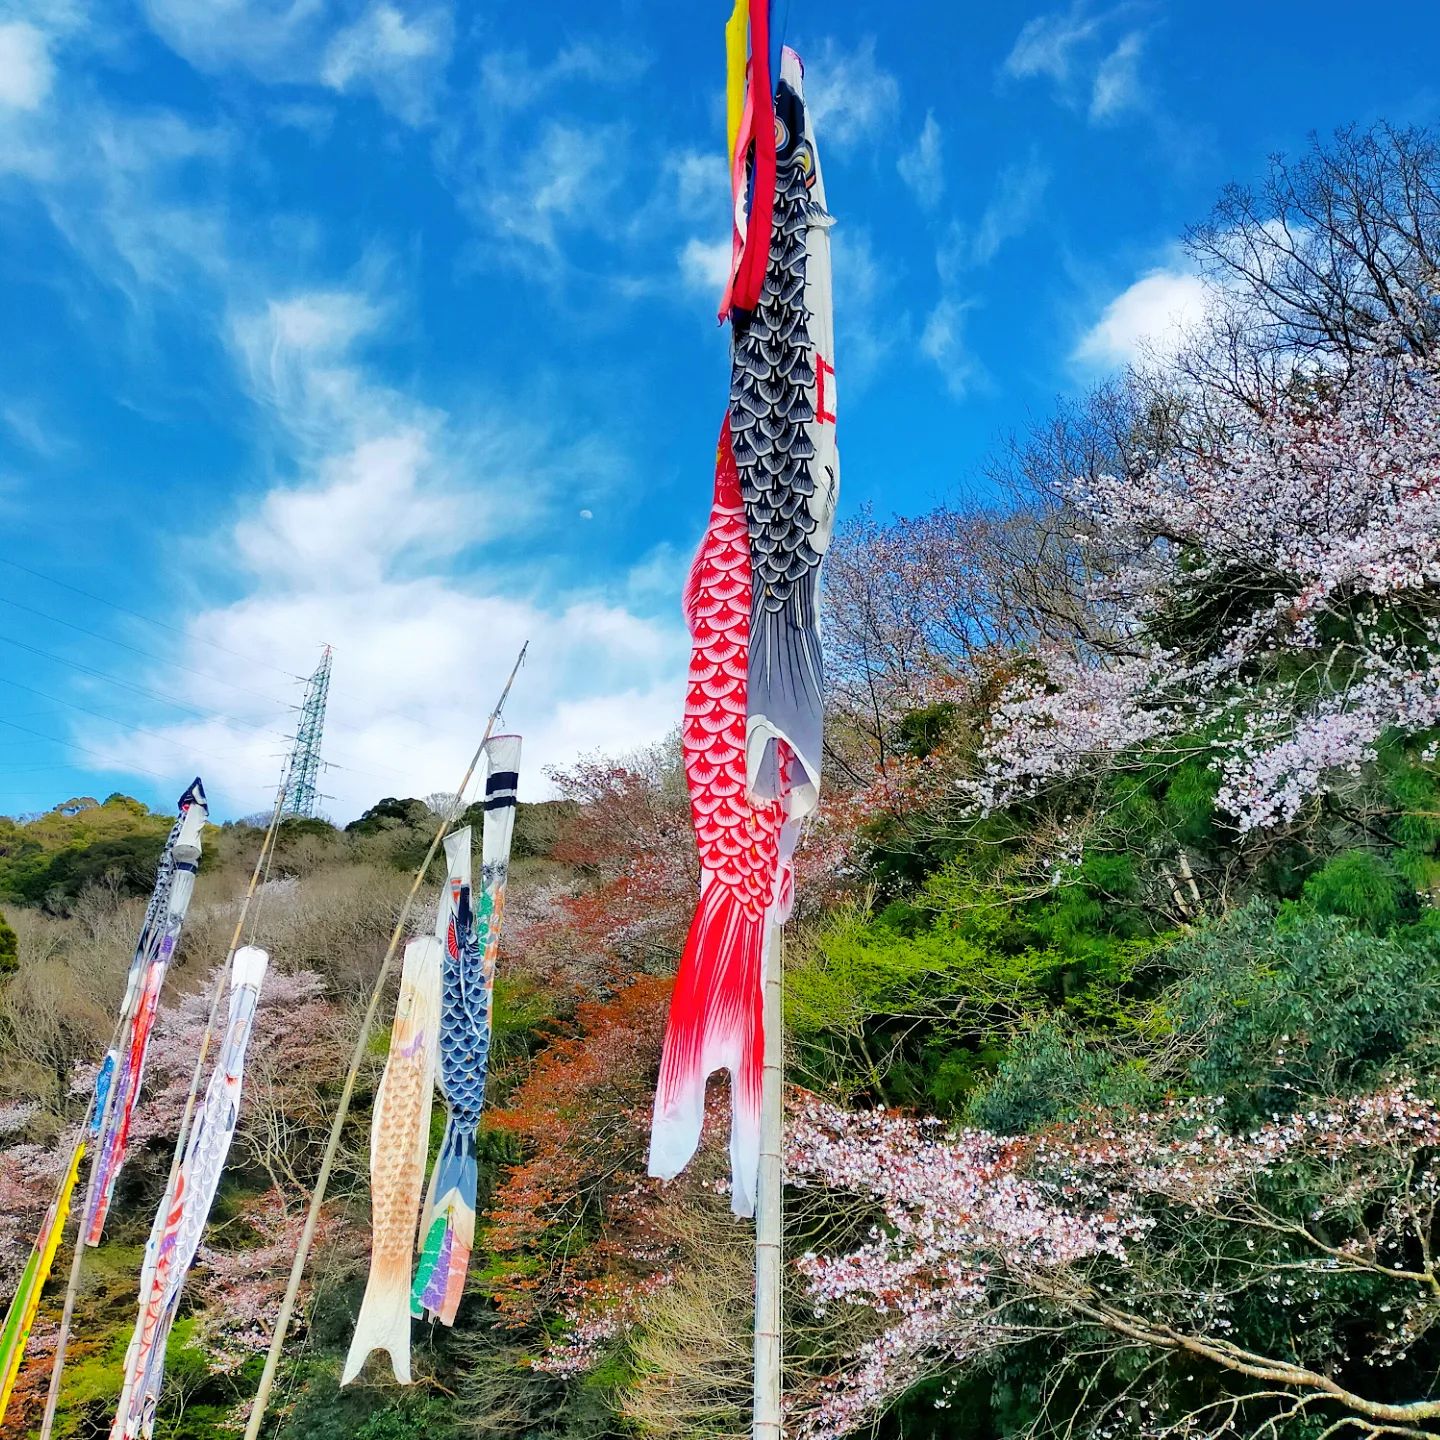 夏山小学校の鯉のぼりと桜- from Instagram